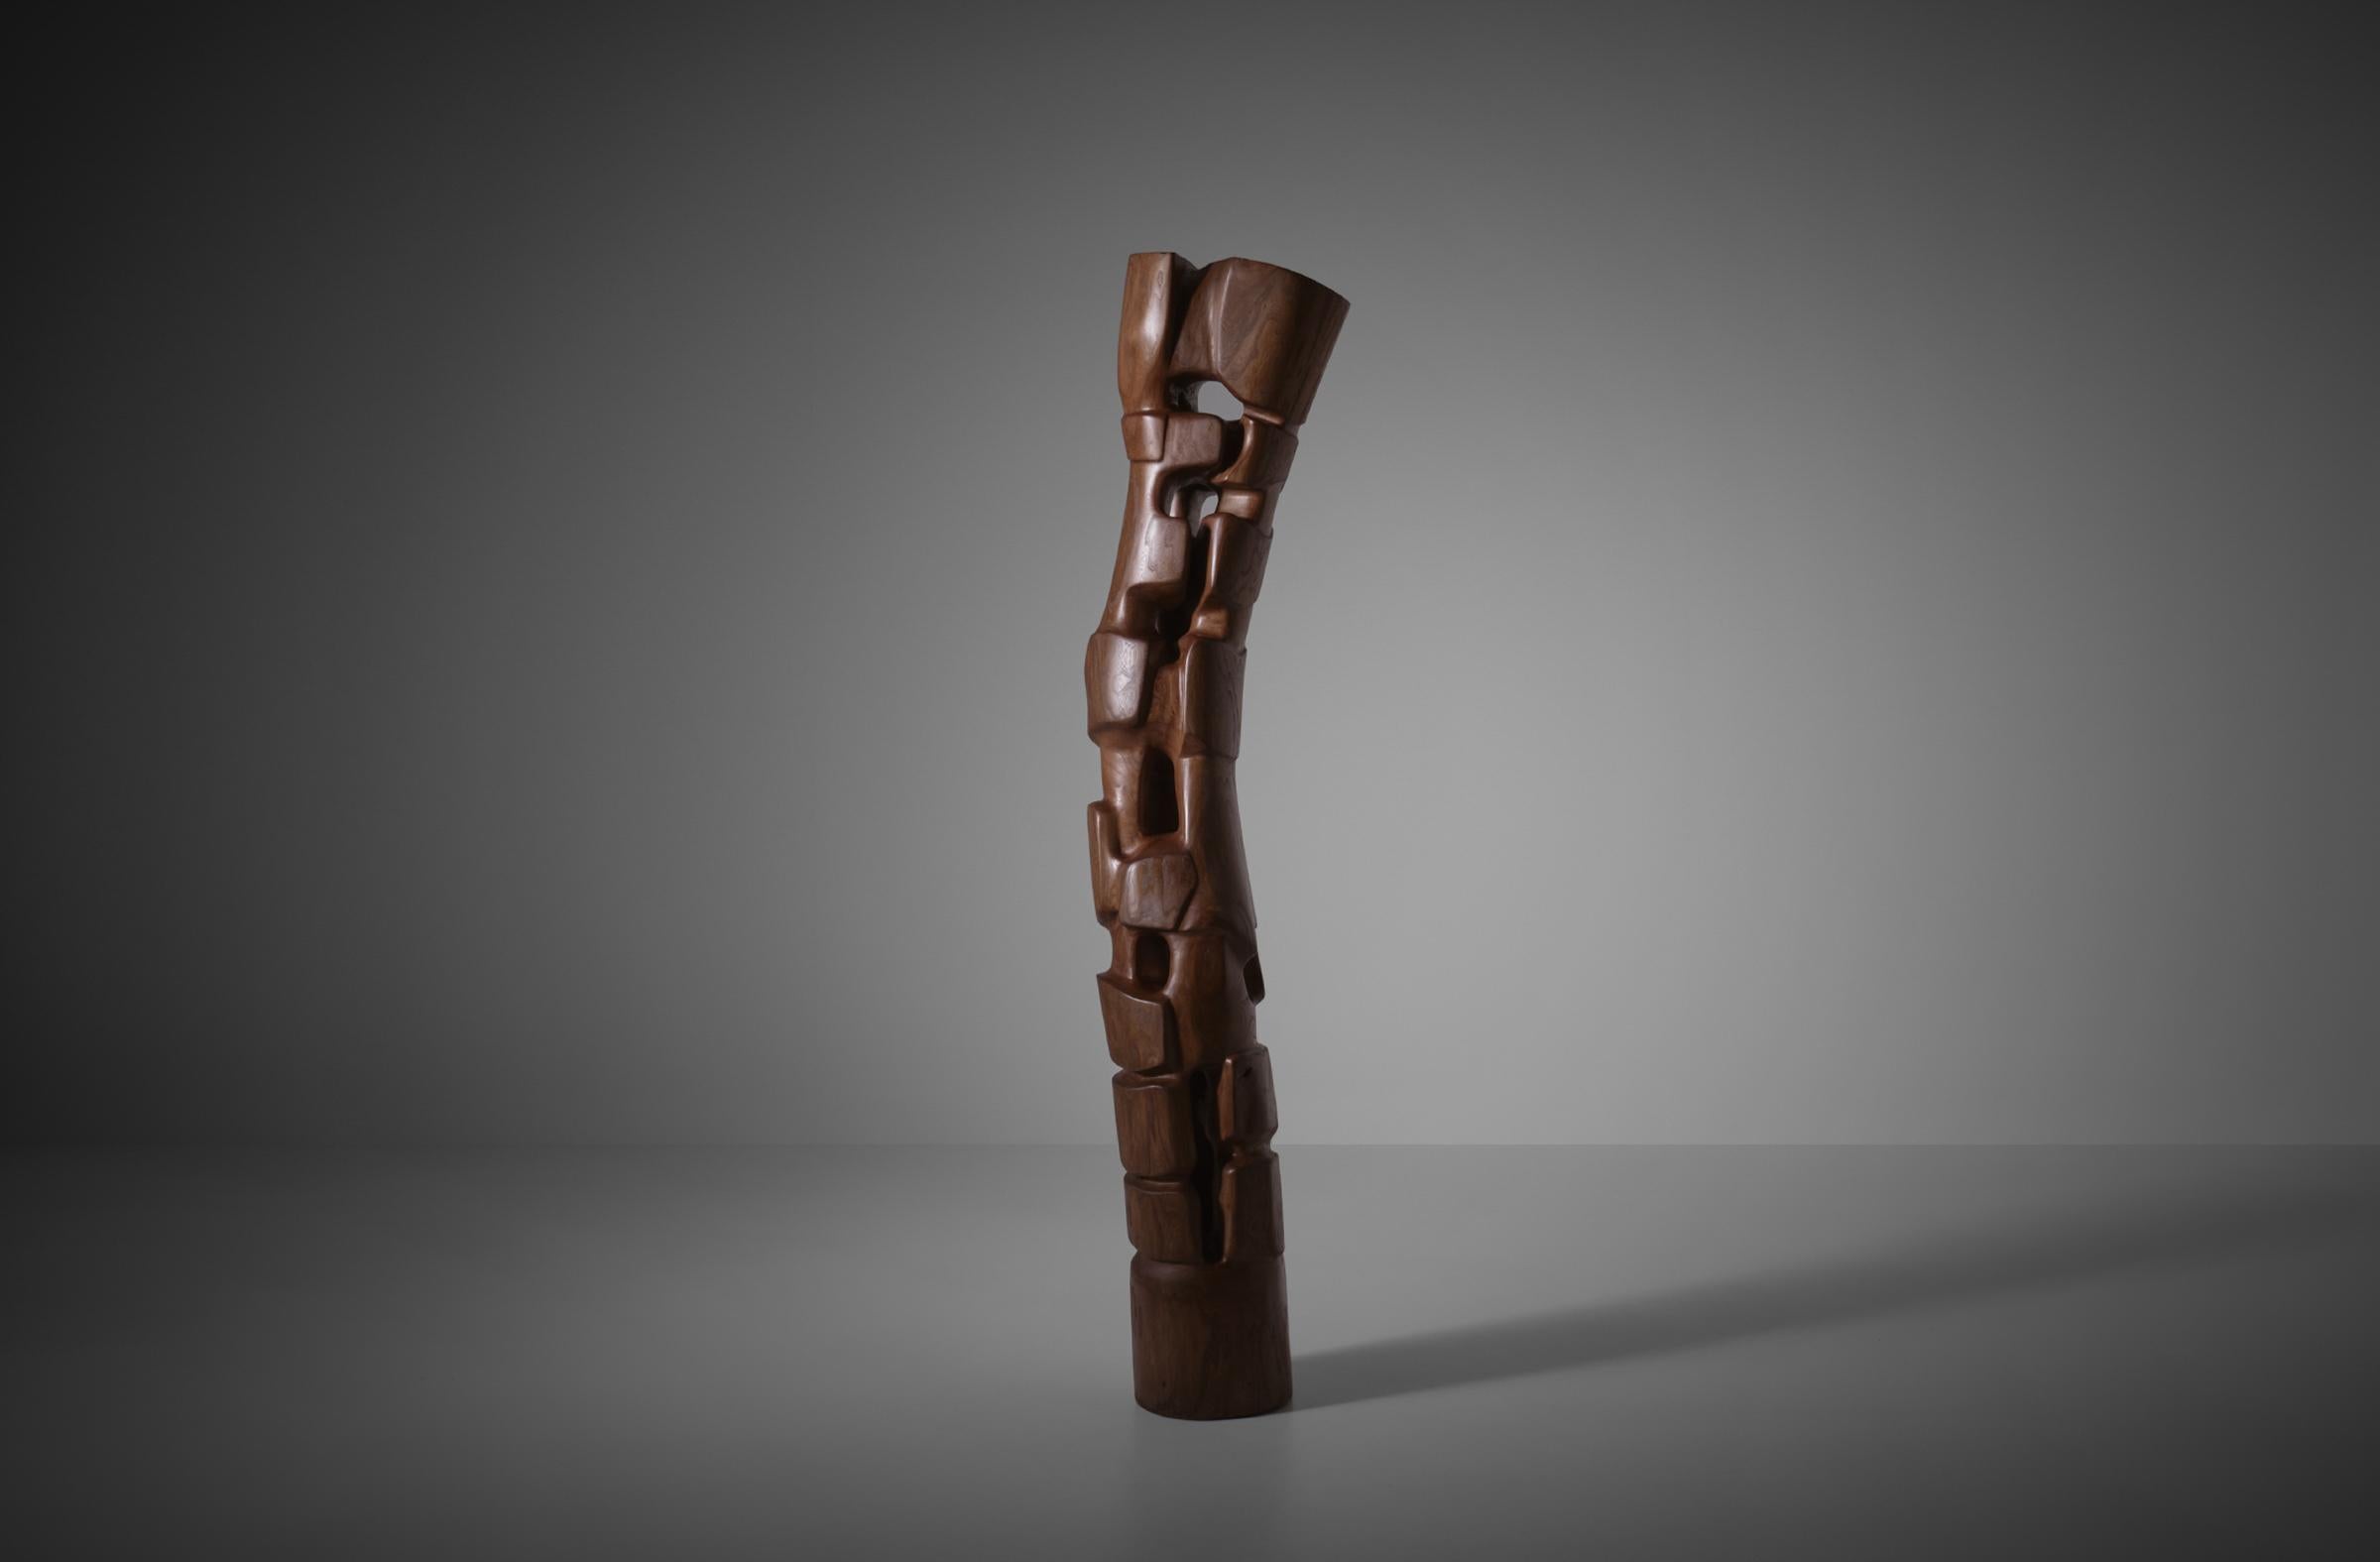 Grande sculpture totem abstraite en bois incurvée de R. van 't Zelfde (La Haye, 1949), Pays-Bas, années 1970. Van 't Zelfde a étudié à l'Académie des beaux-arts de La Haye. La sculpture est sculptée à la main dans une seule pièce de bois d'orme